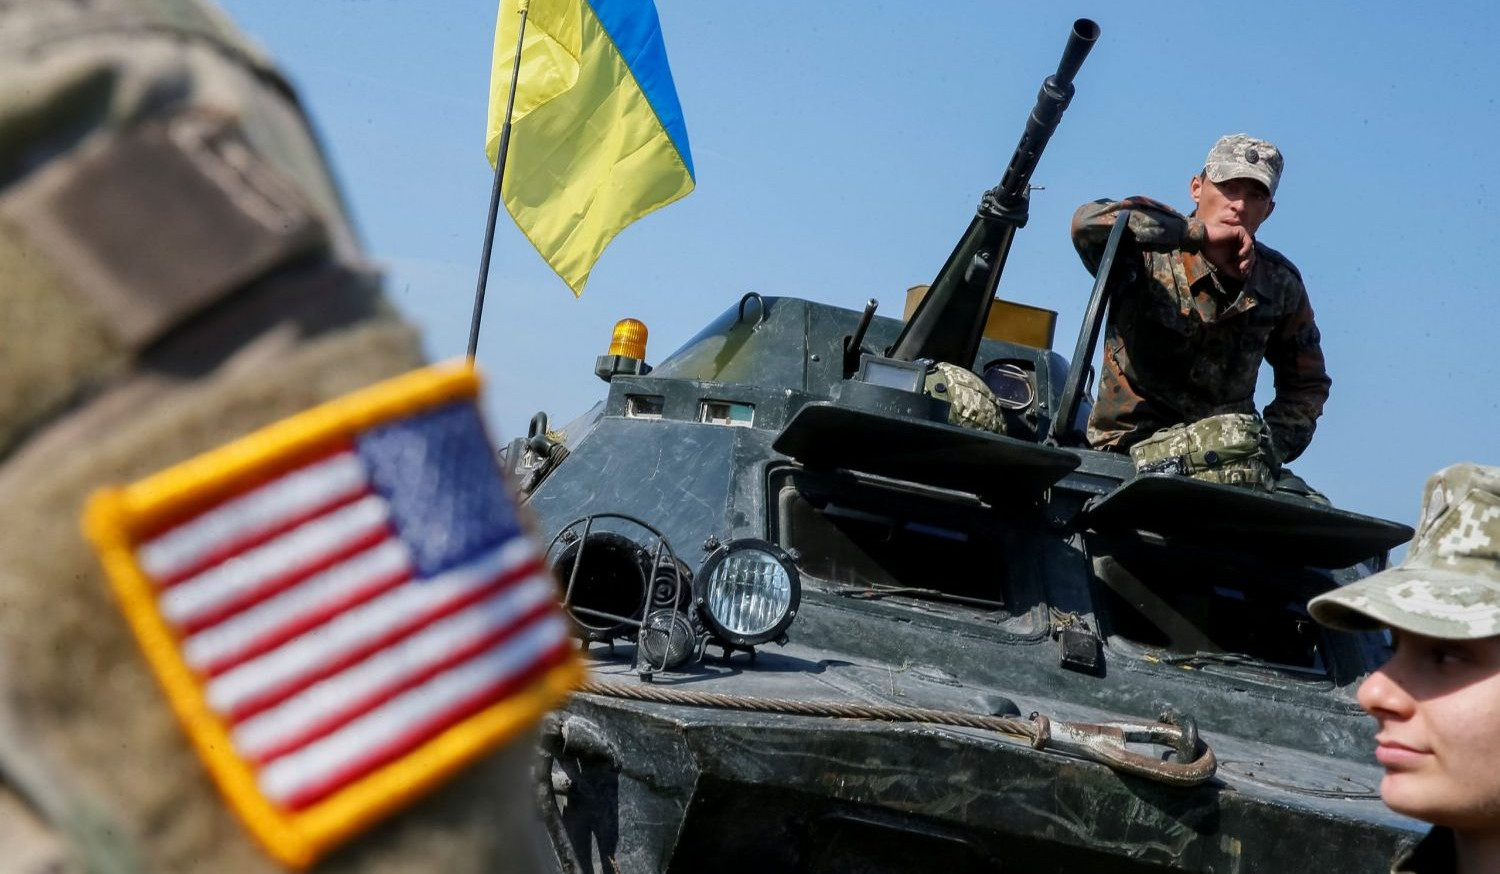 ԱՄՆ-ն Ուկրաինային ռազմական օգնության նոր փաթեթ կտրամադրի